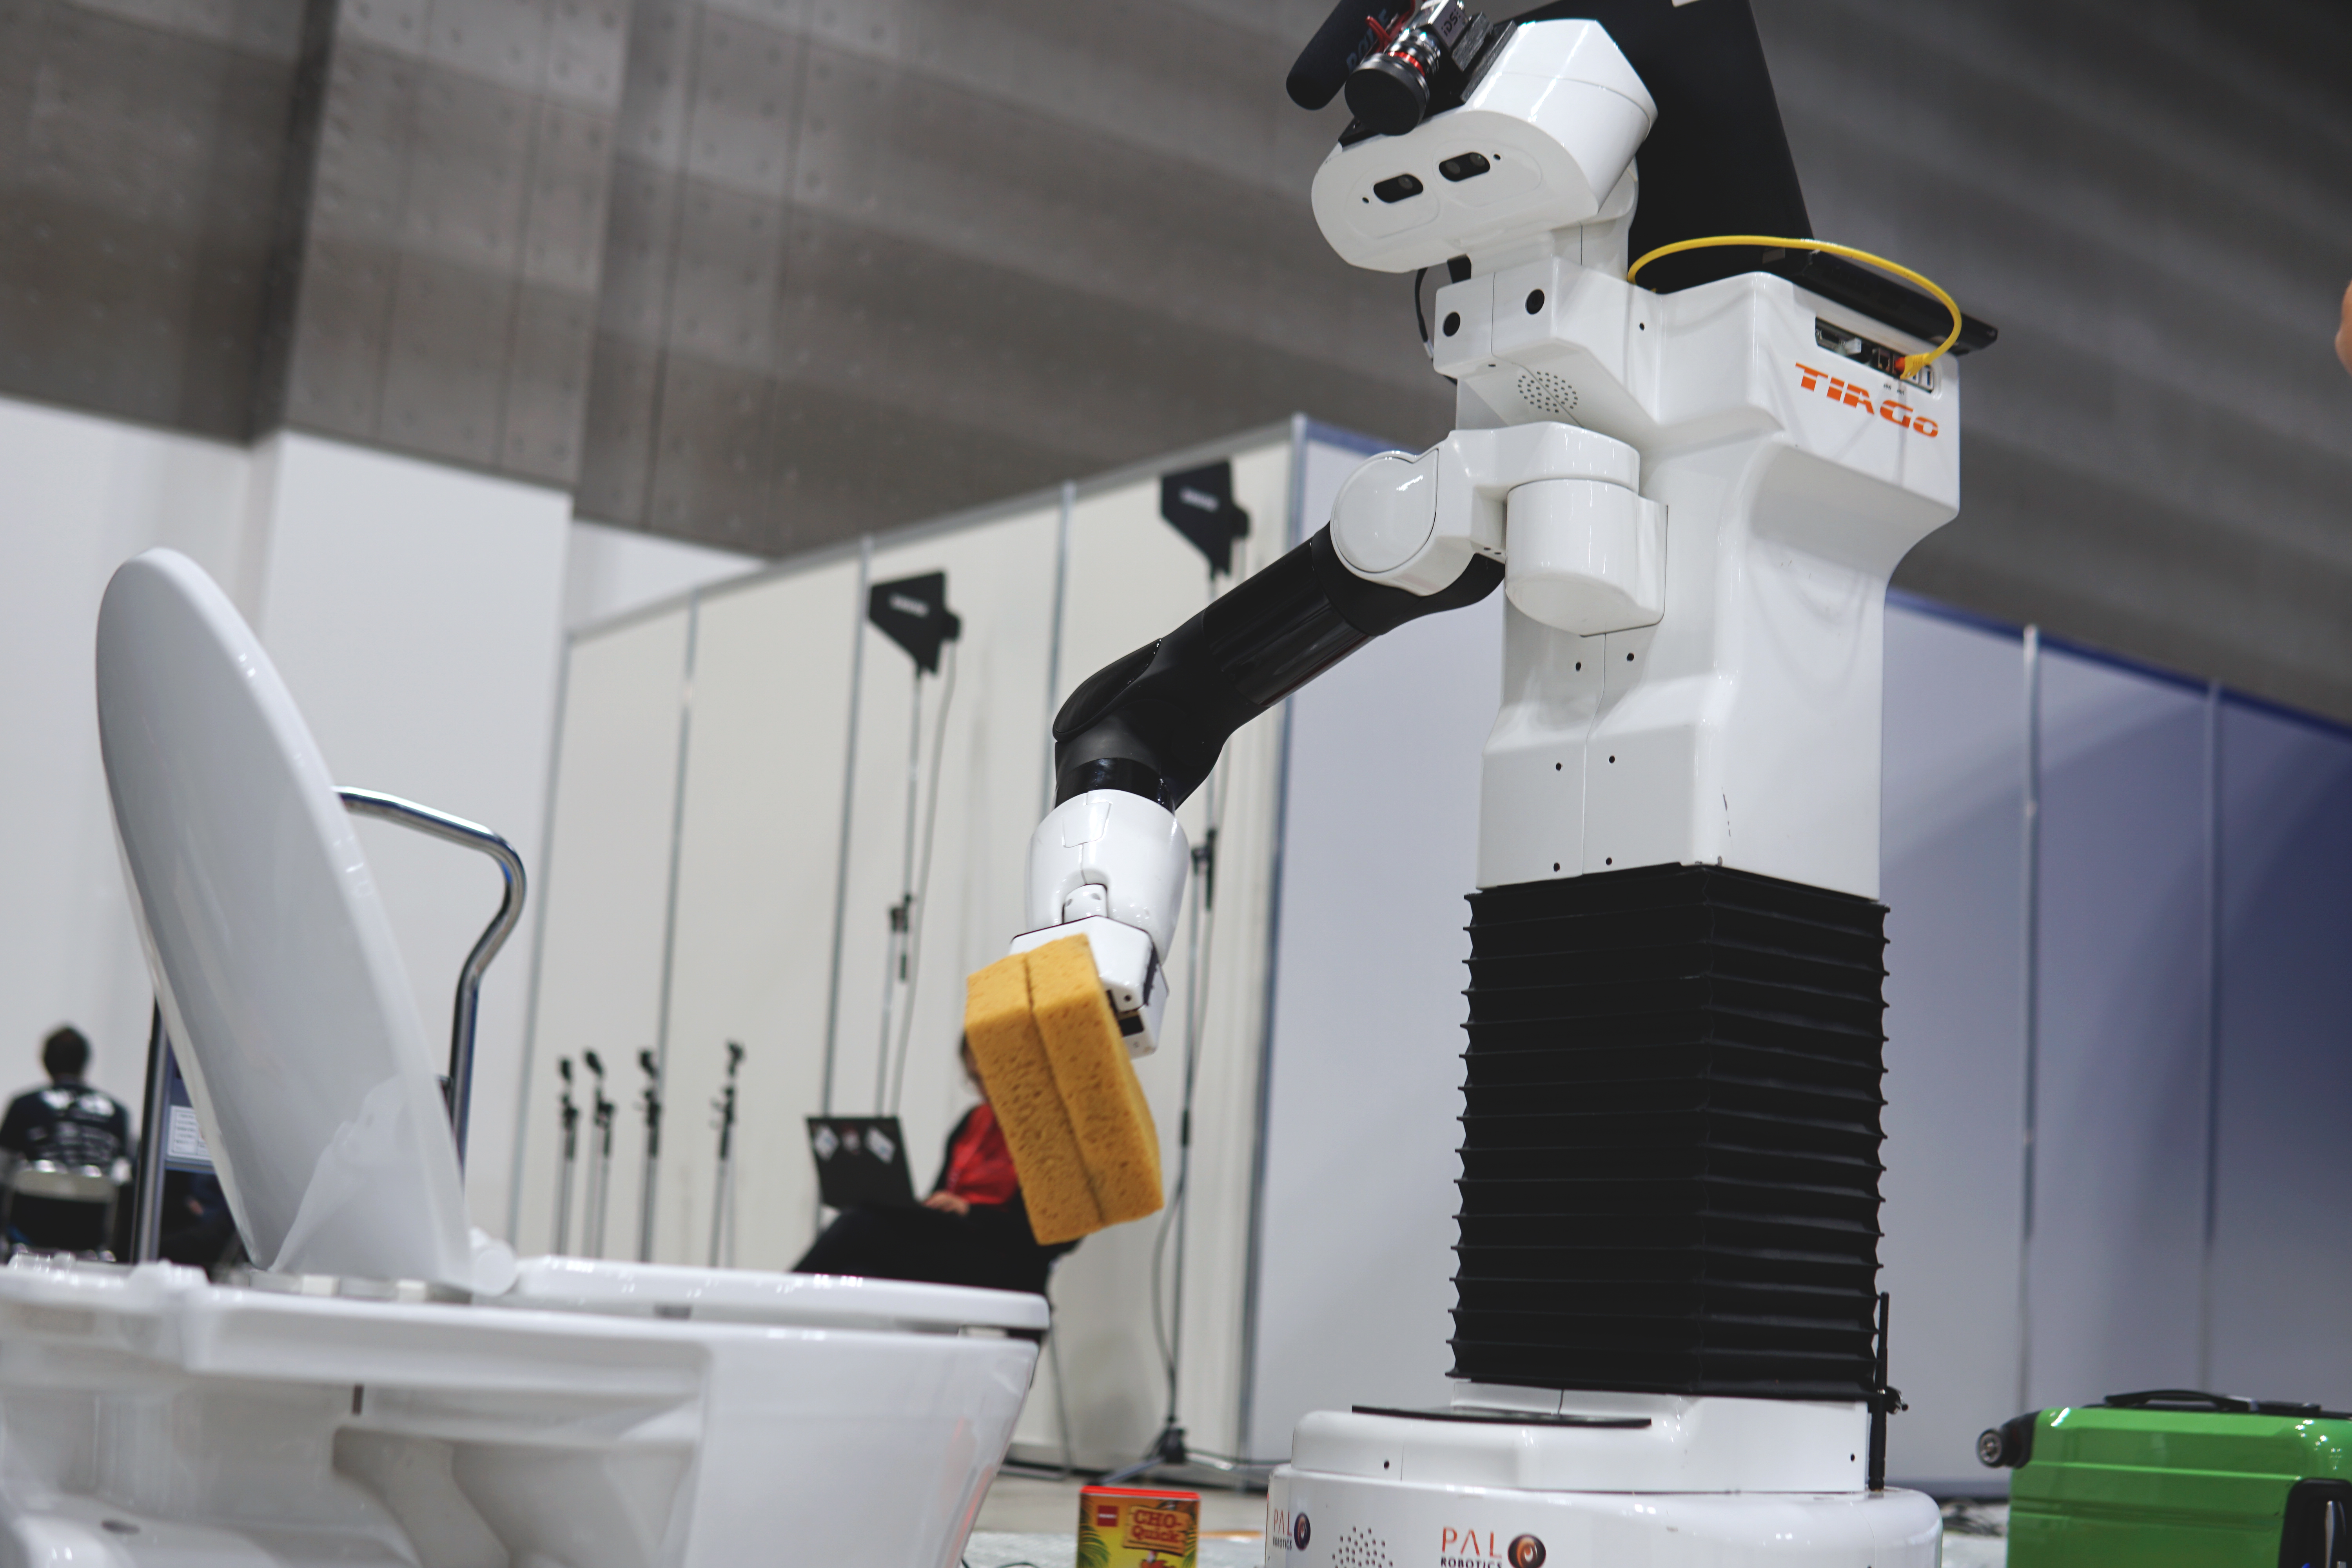 Запусти уборку роботом. Робот помощник по дому. Робот уборщик. Бытовые роботы помощники. Роботы в быту.